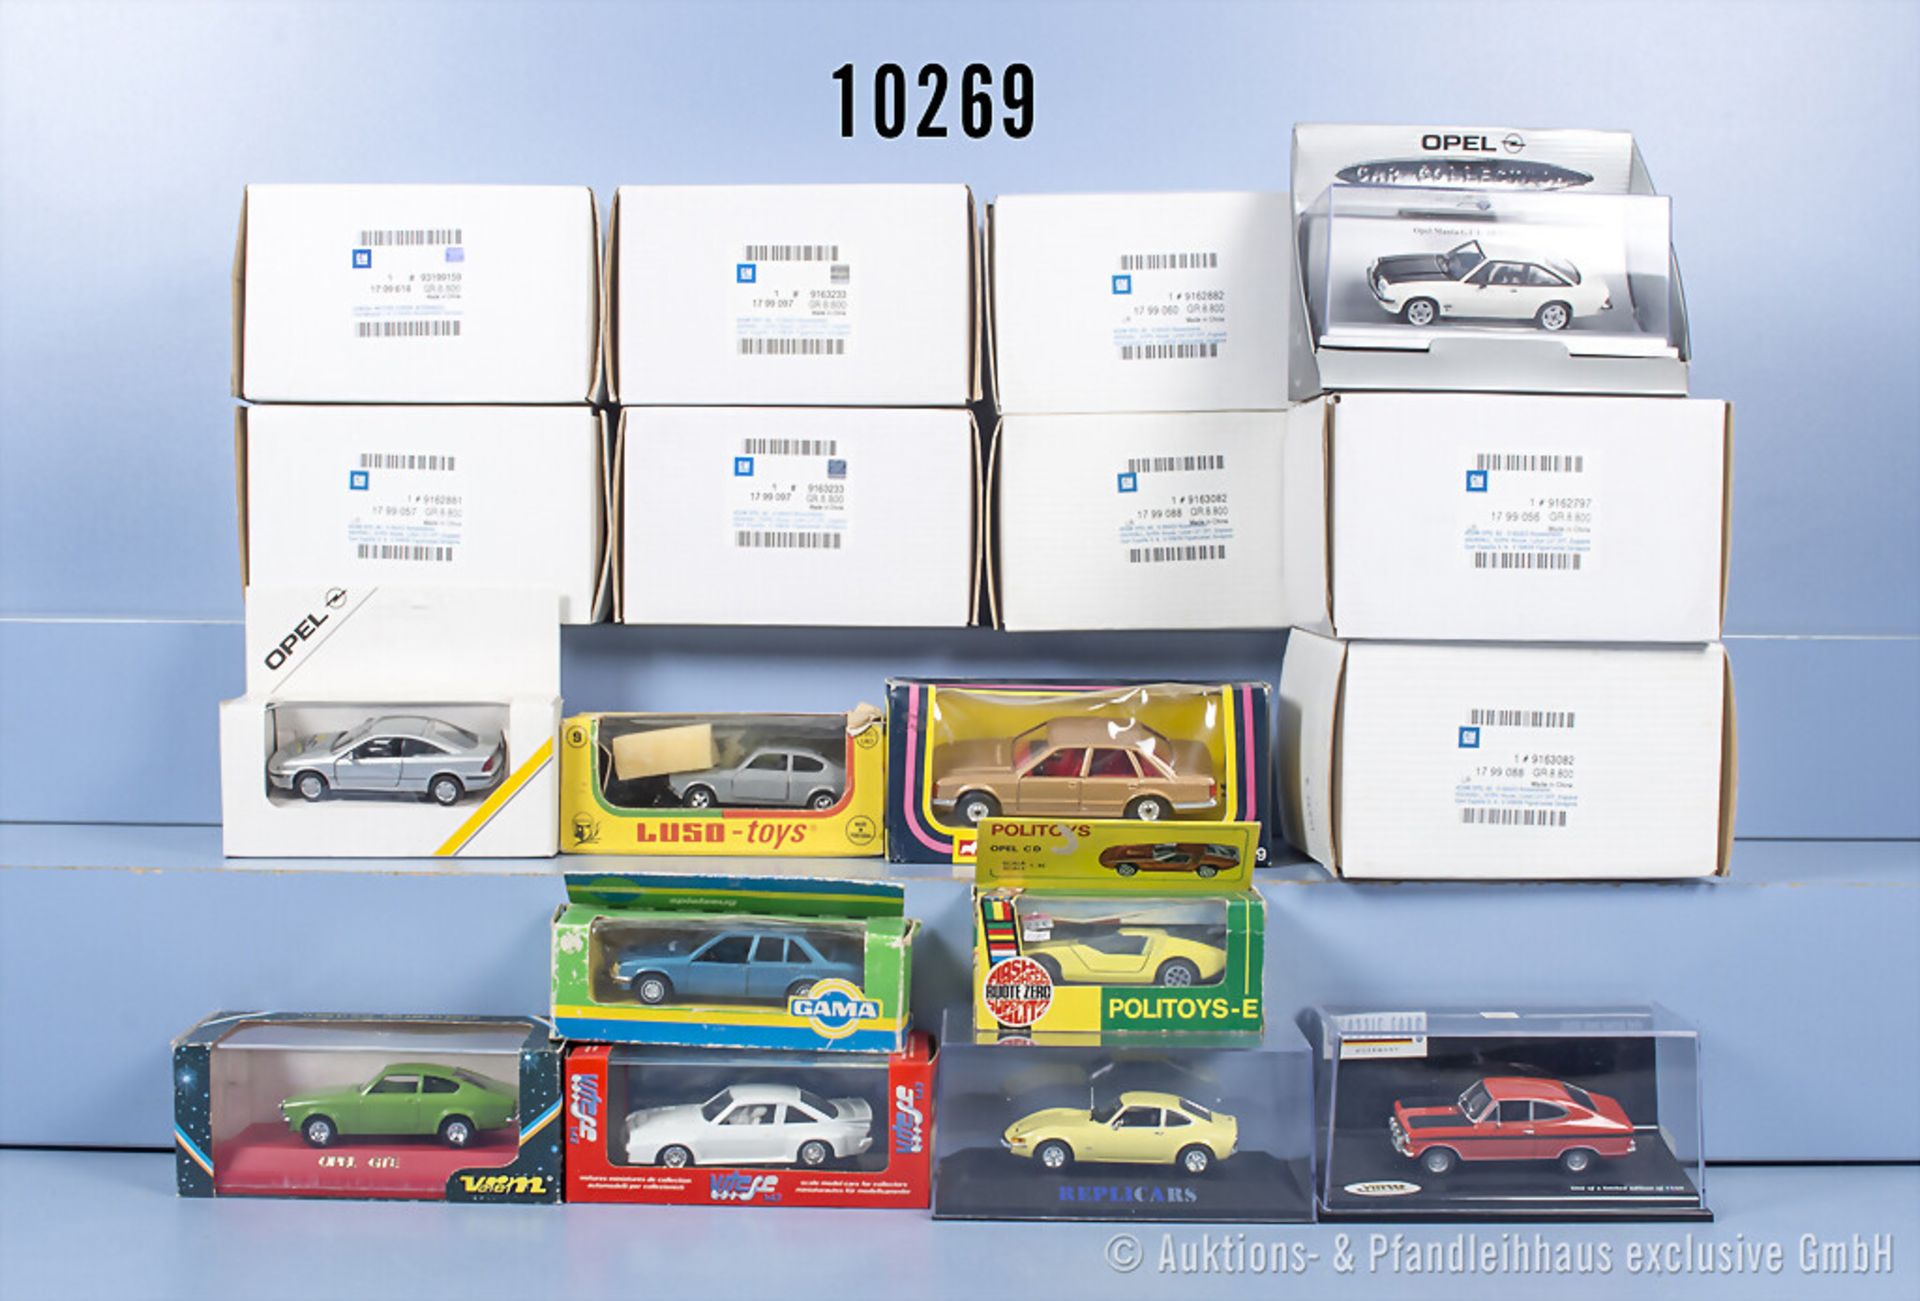 18 Opel Modellfahrzeuge, unterschiedliche Ausführungen, dabei Verem, Politoys, Vitesse ...